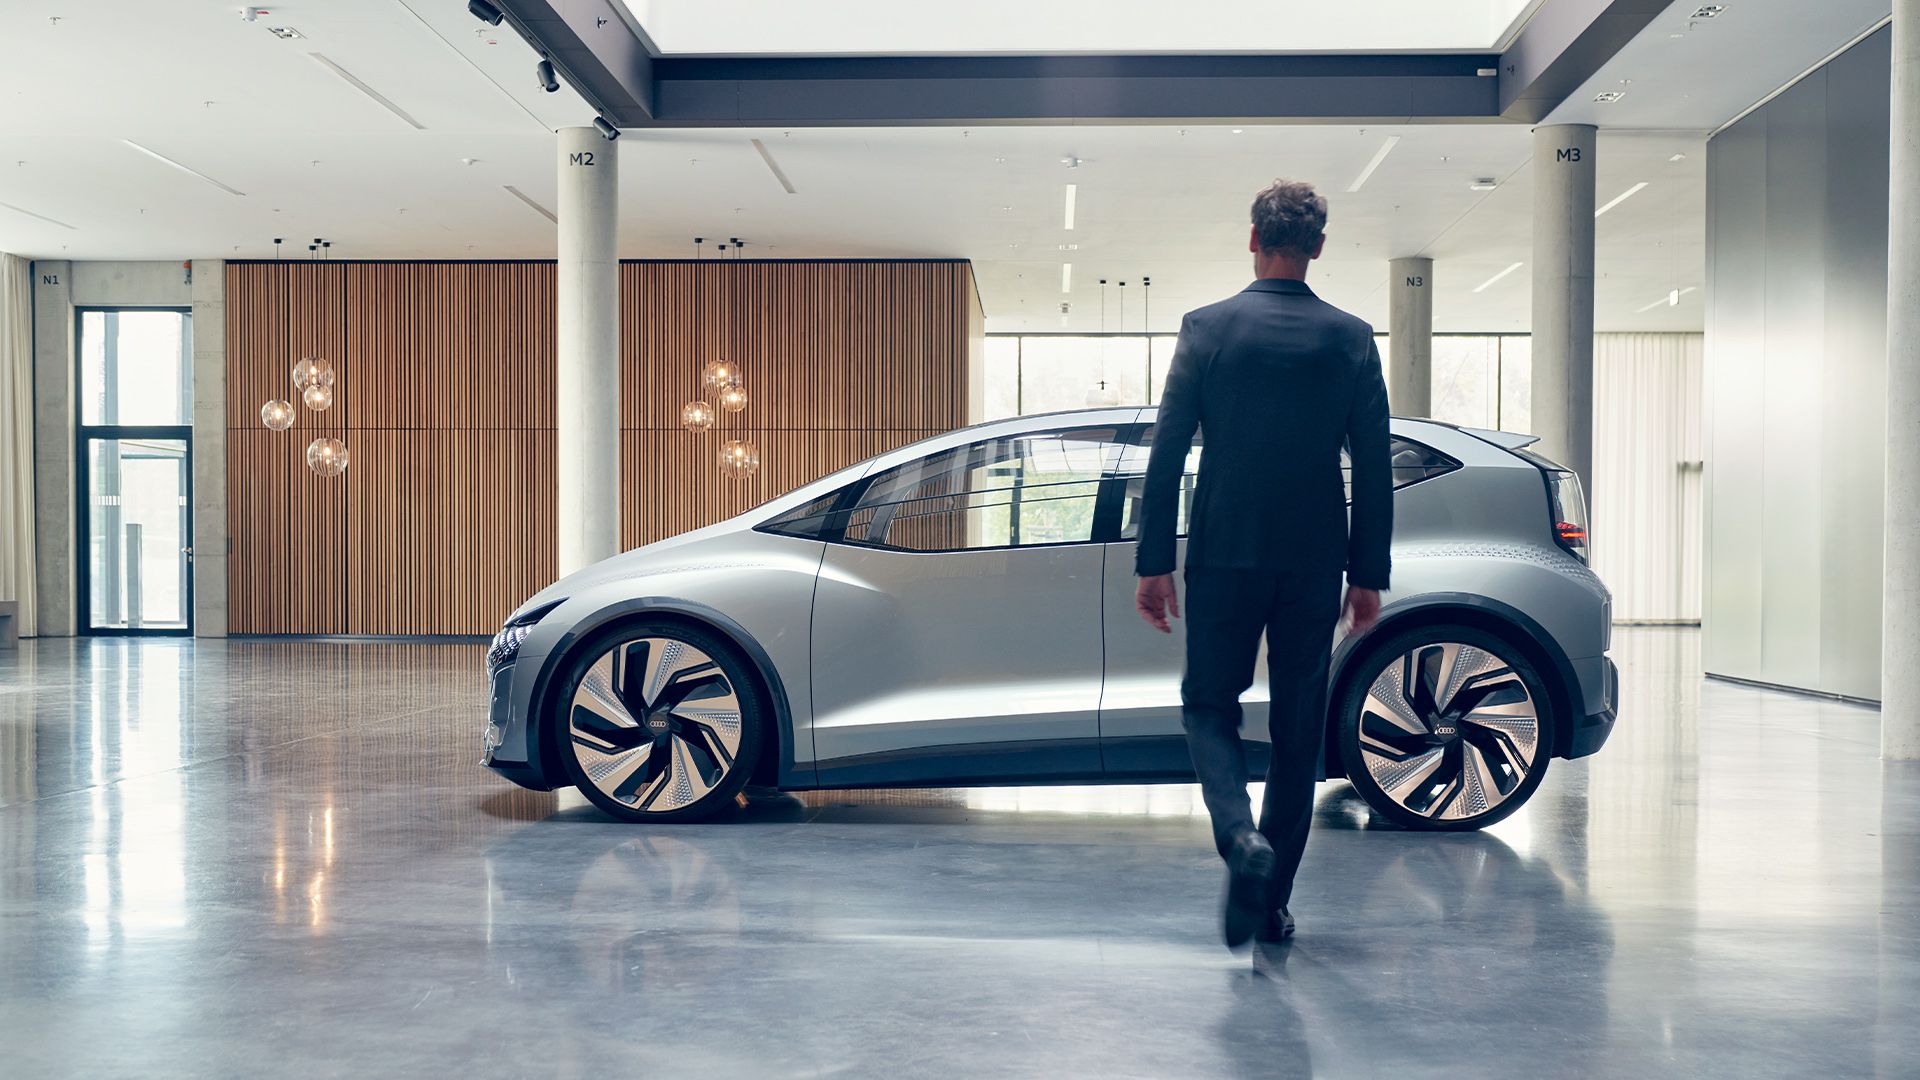 El Audi AI:ME¹ se presentó por primera vez en 2019 en el Salón del Automóvil de Shanghái. Este concepto visionario de movilidad para las megaciudades de mañana ofrece dimensiones compactas, un interior futurista y una capacidad de conducción altamente automatizada de nivel 4². El vehículo que aquí se muestra es un automóvil conceptual que no está disponible como modelo de serie. 